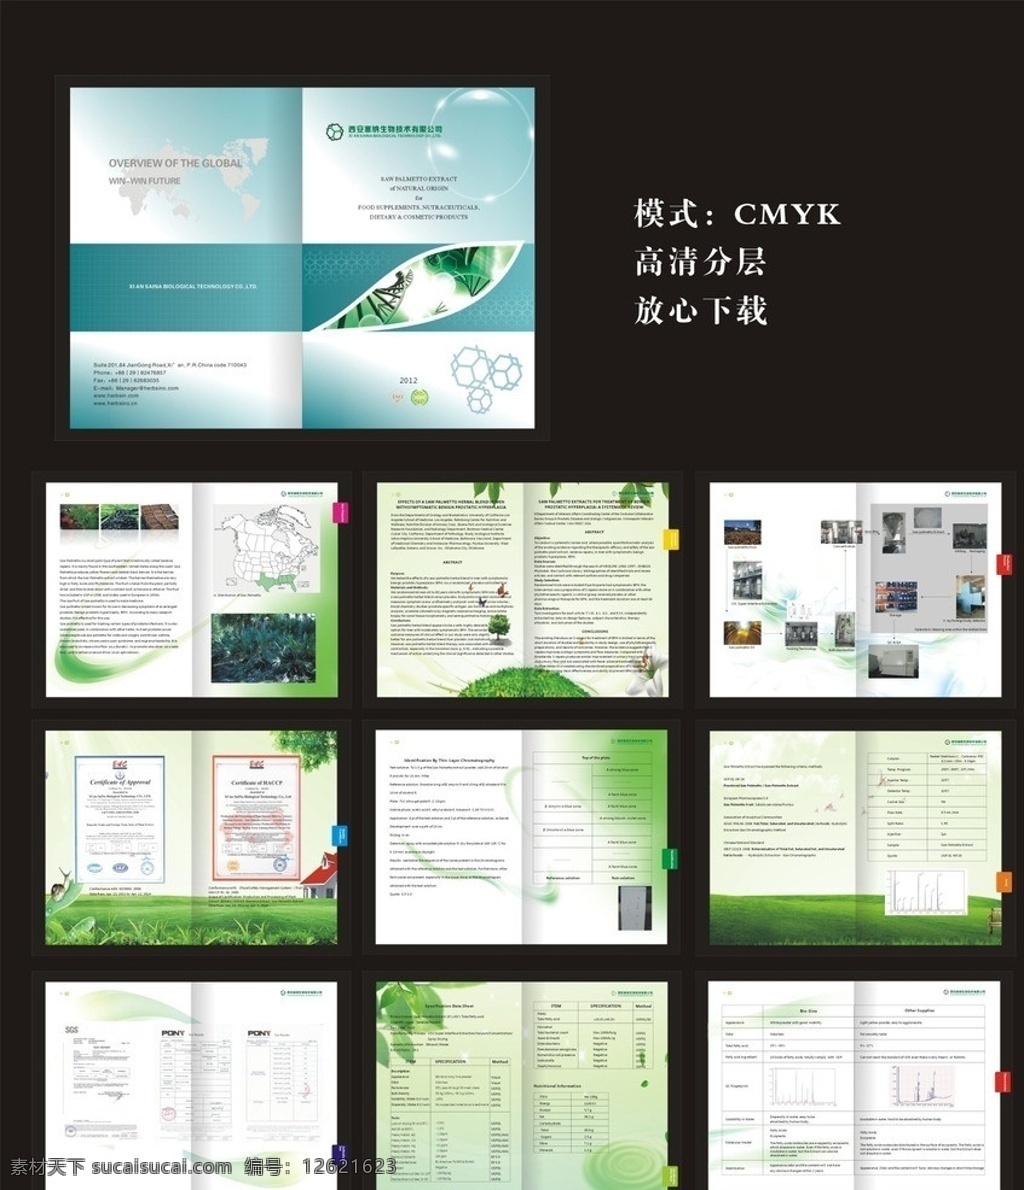 生物画册 生物 环保 画册 绿色 生物科技 矢量图 提取物 塞纳 水果 高档画册 展板 海报 高清素材 画册素材 画册设计 矢量